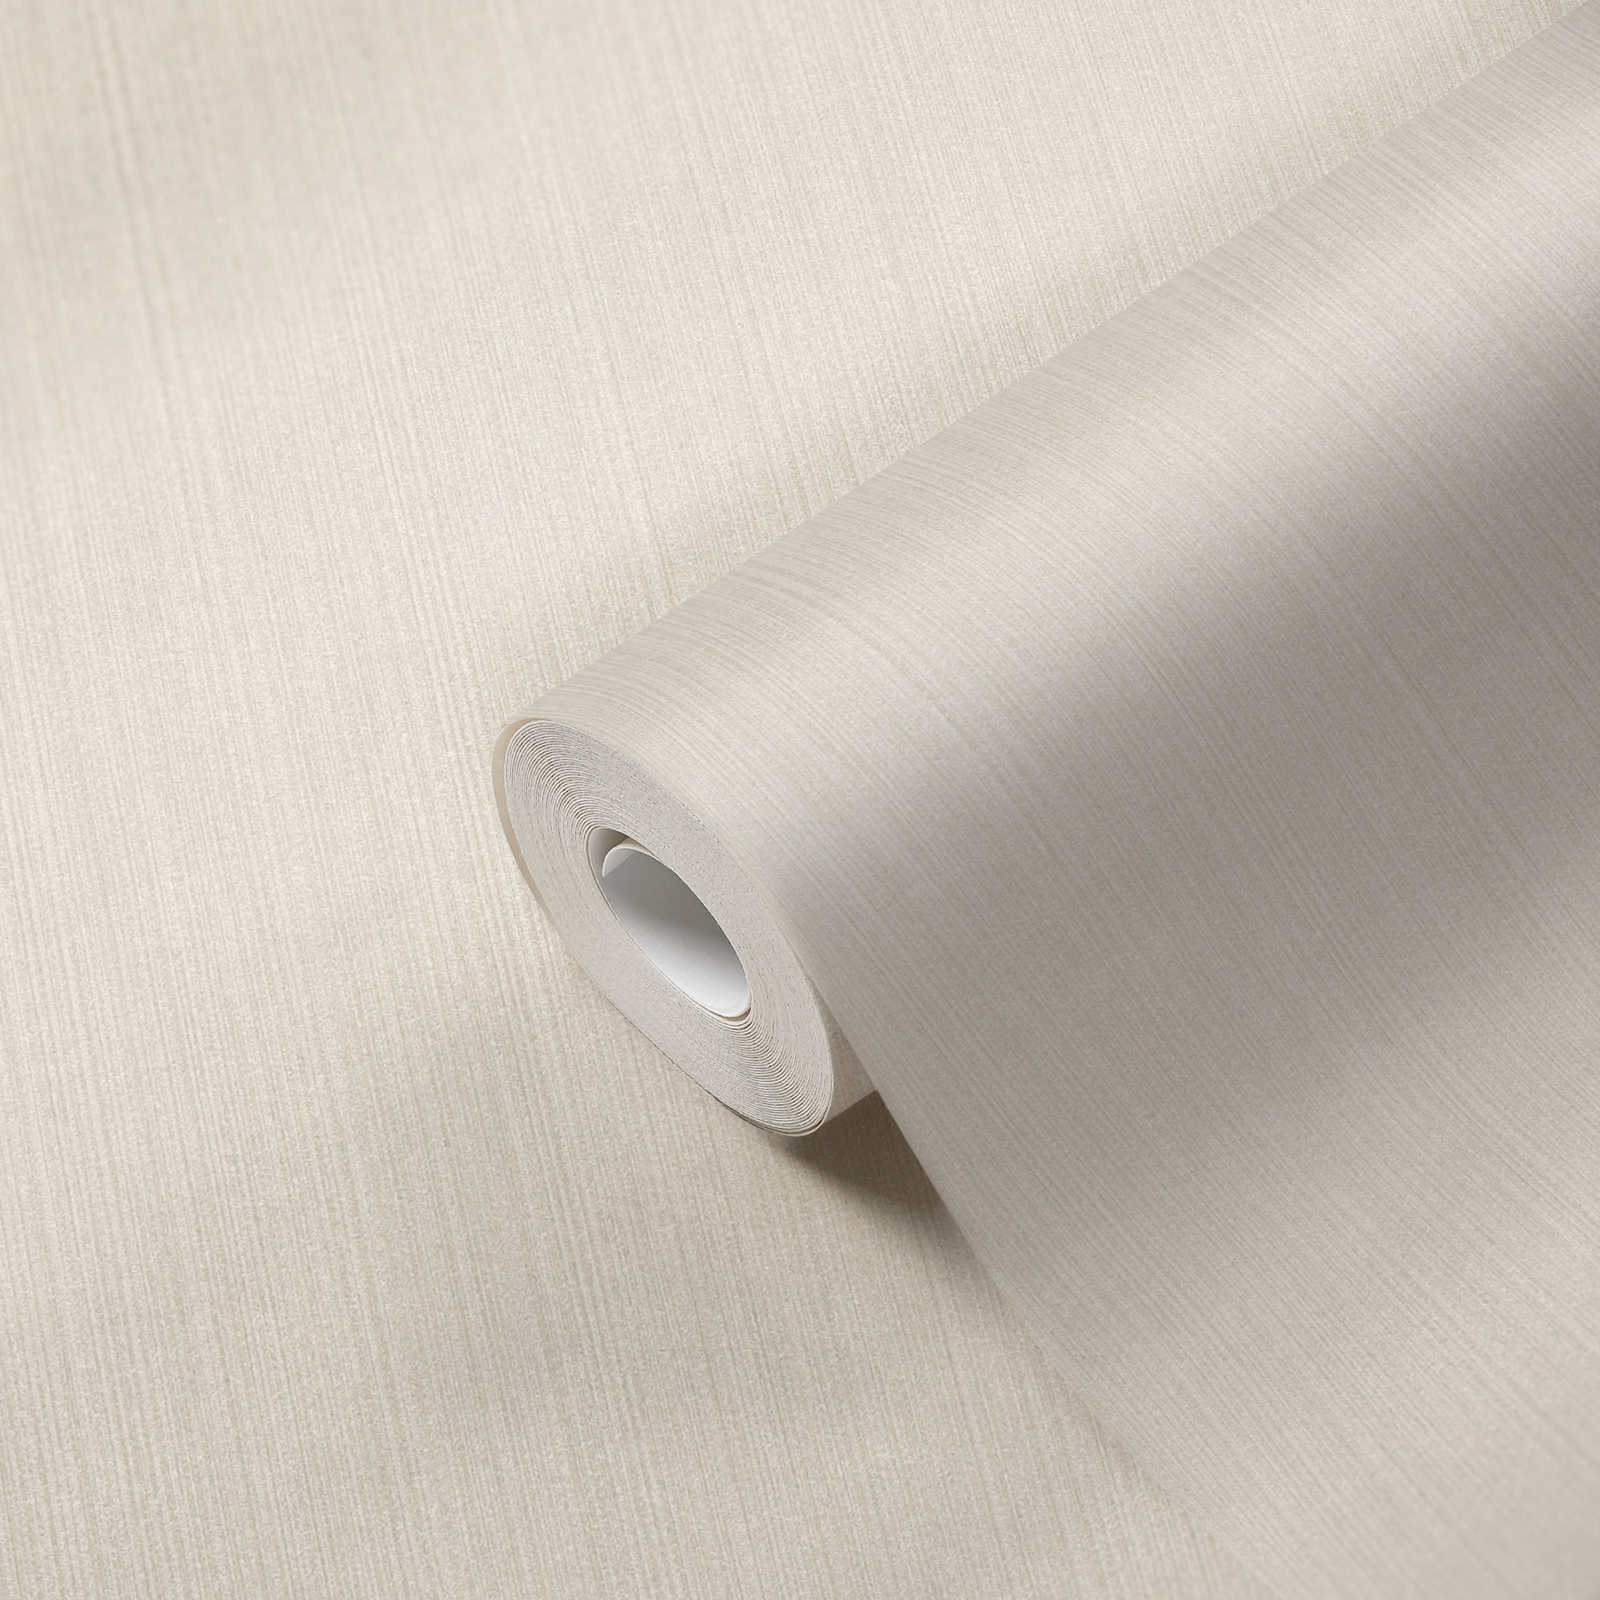             Papier peint scintillant avec motif ligné & aspect soie sauvage - blanc
        